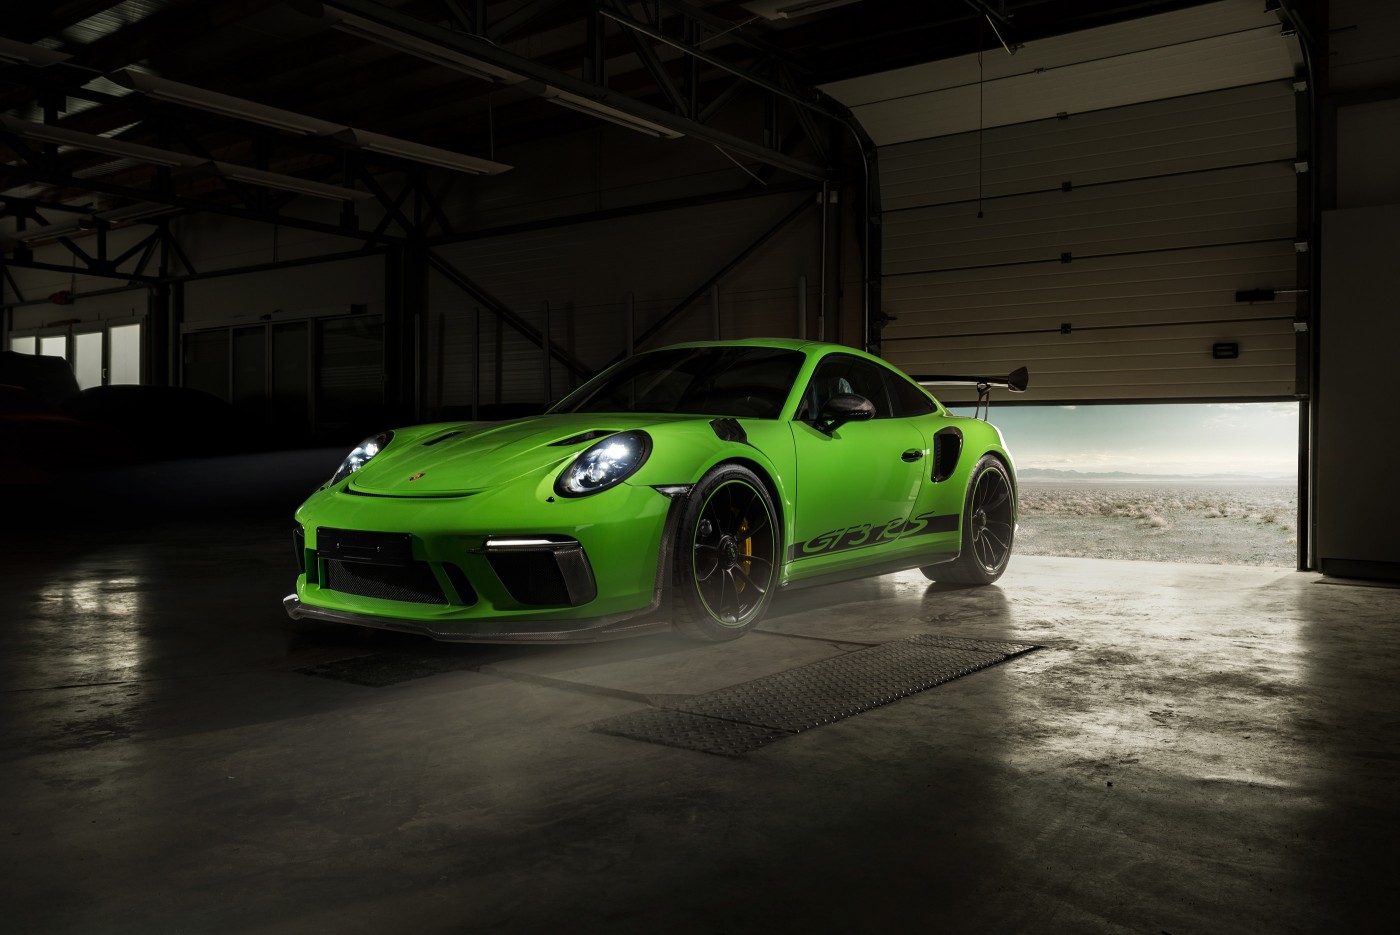 优雅的设计 奢华的运动气势 保时捷911 GT3 绿色车漆回头率高_车家号_发现车生活_汽车之家